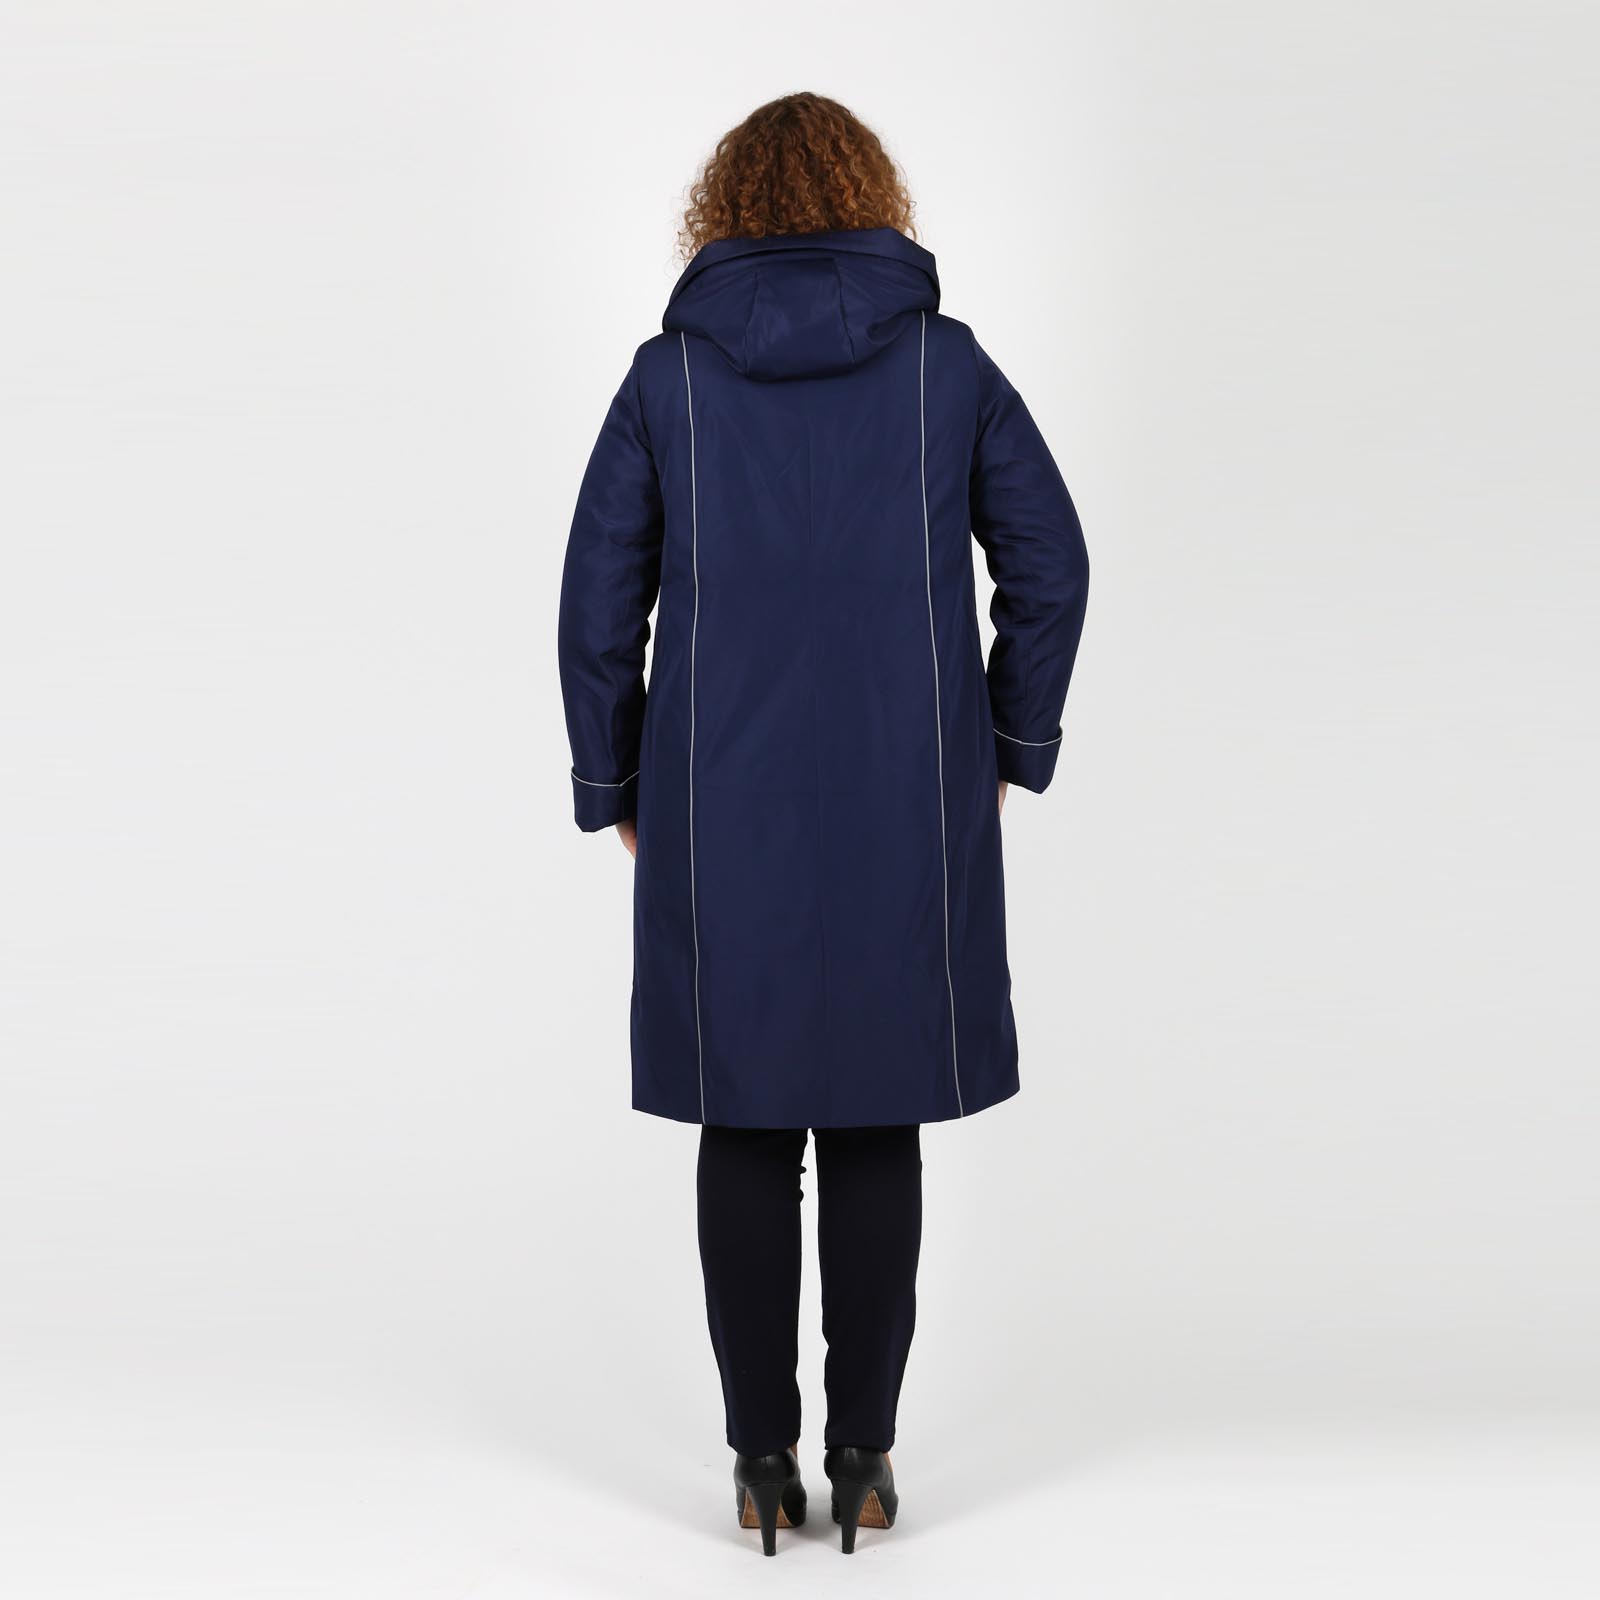 Пальто на молнии с капюшоном и карманами Mio Imperatrice, размер 50, цвет синий - фото 3